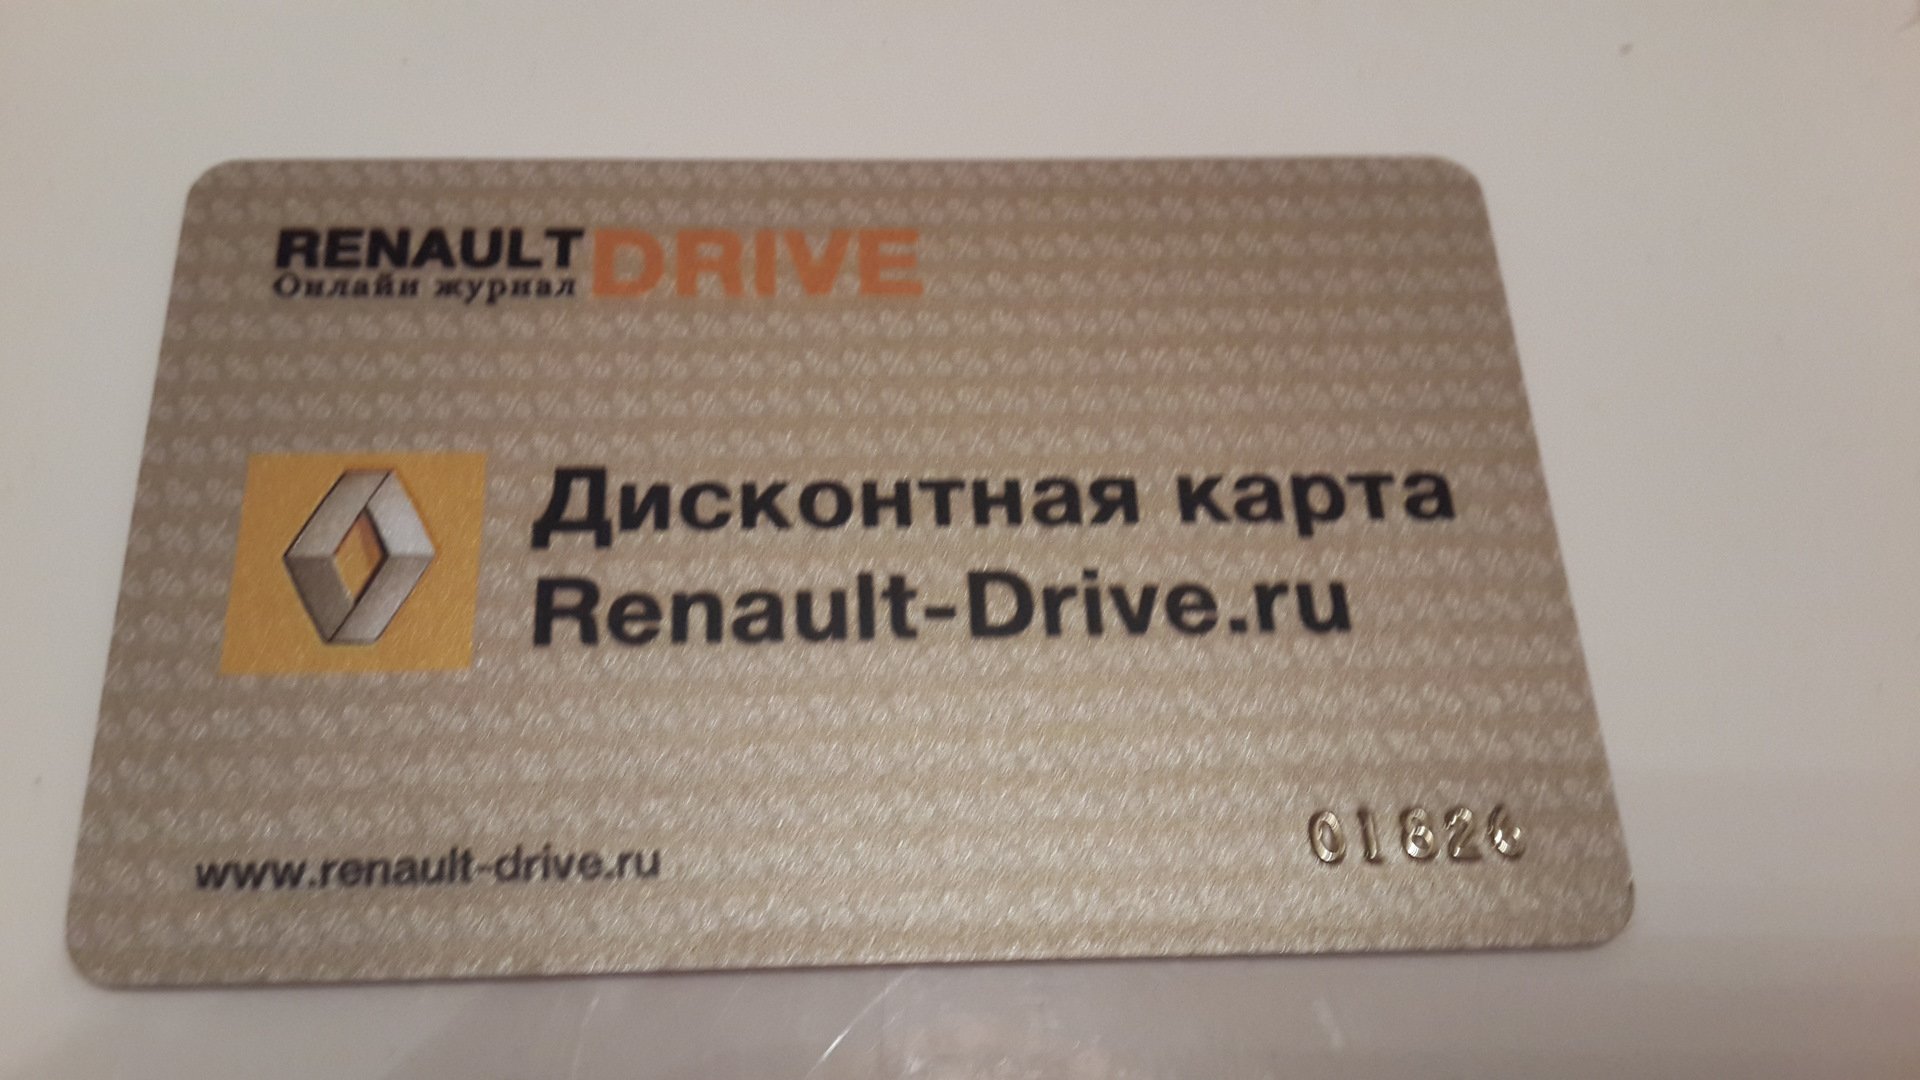 Рено драйвер. Дисконтная карта Renault-Drive карта. Клубная карта Рено. Карта автоклуба. Скидочная карта Renault.